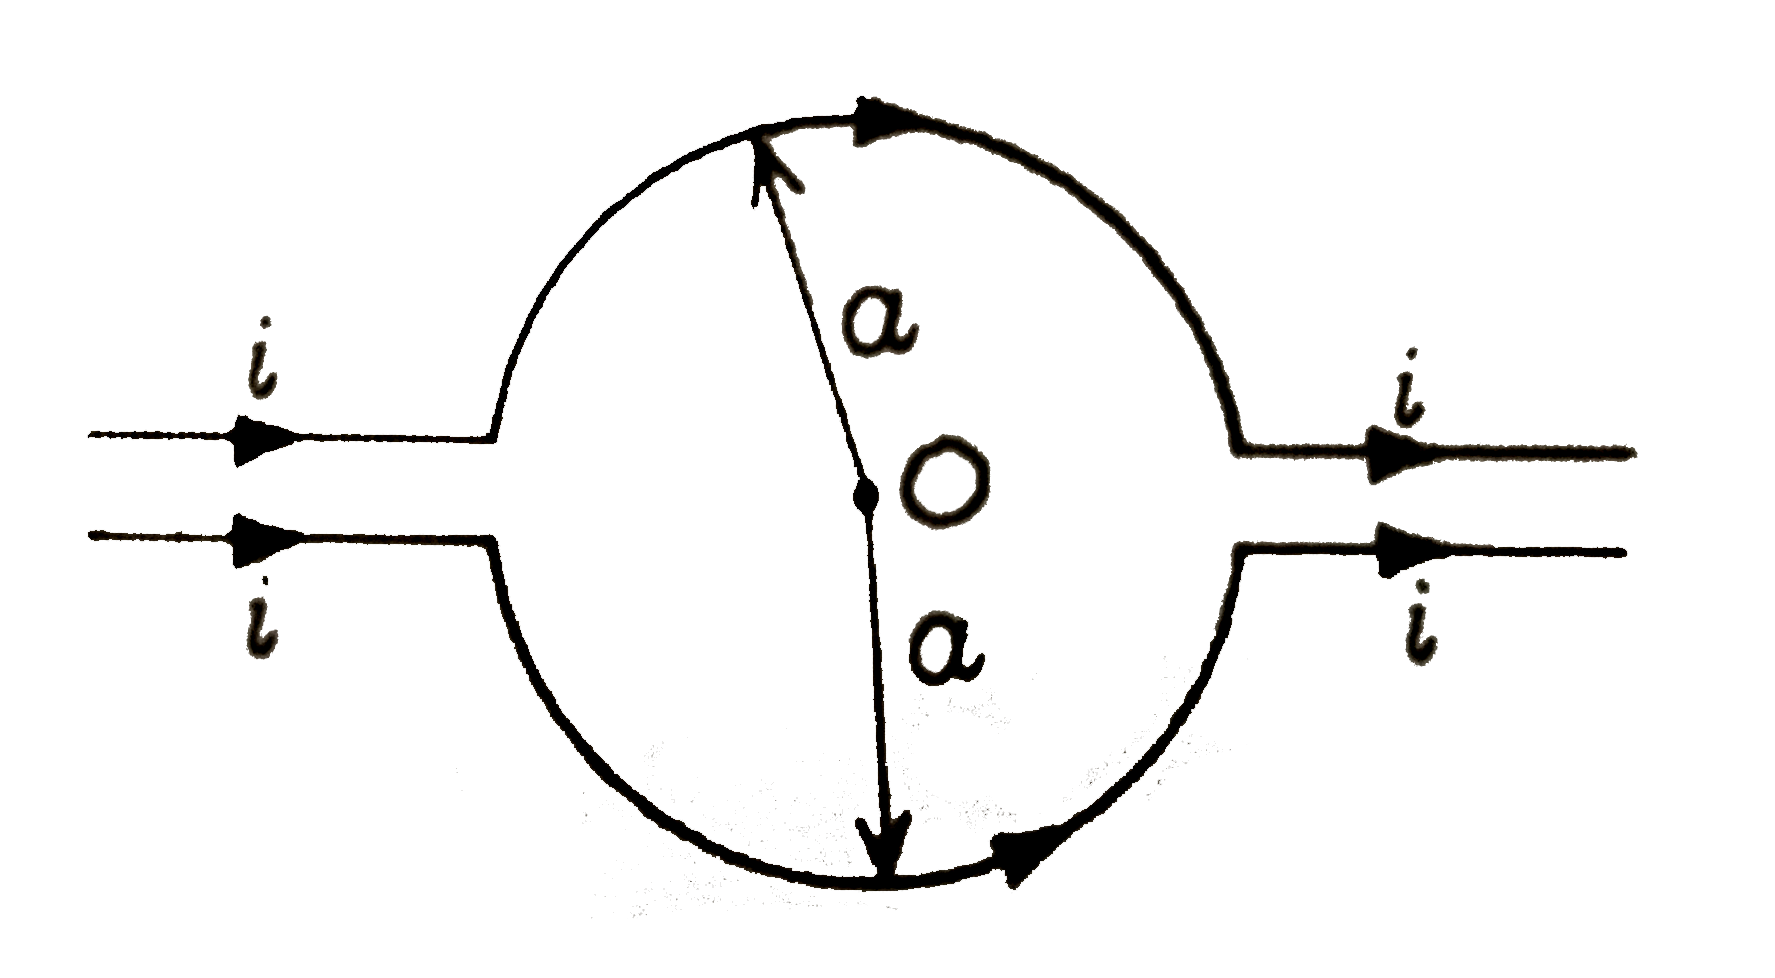 संलग्न चित्र में प्रदर्शित तारों में प्रवाहित वैधुत धारा के कारण केंद O पर चुंबकीय क्षेत्र B का मान ज्ञात कीजिए ।